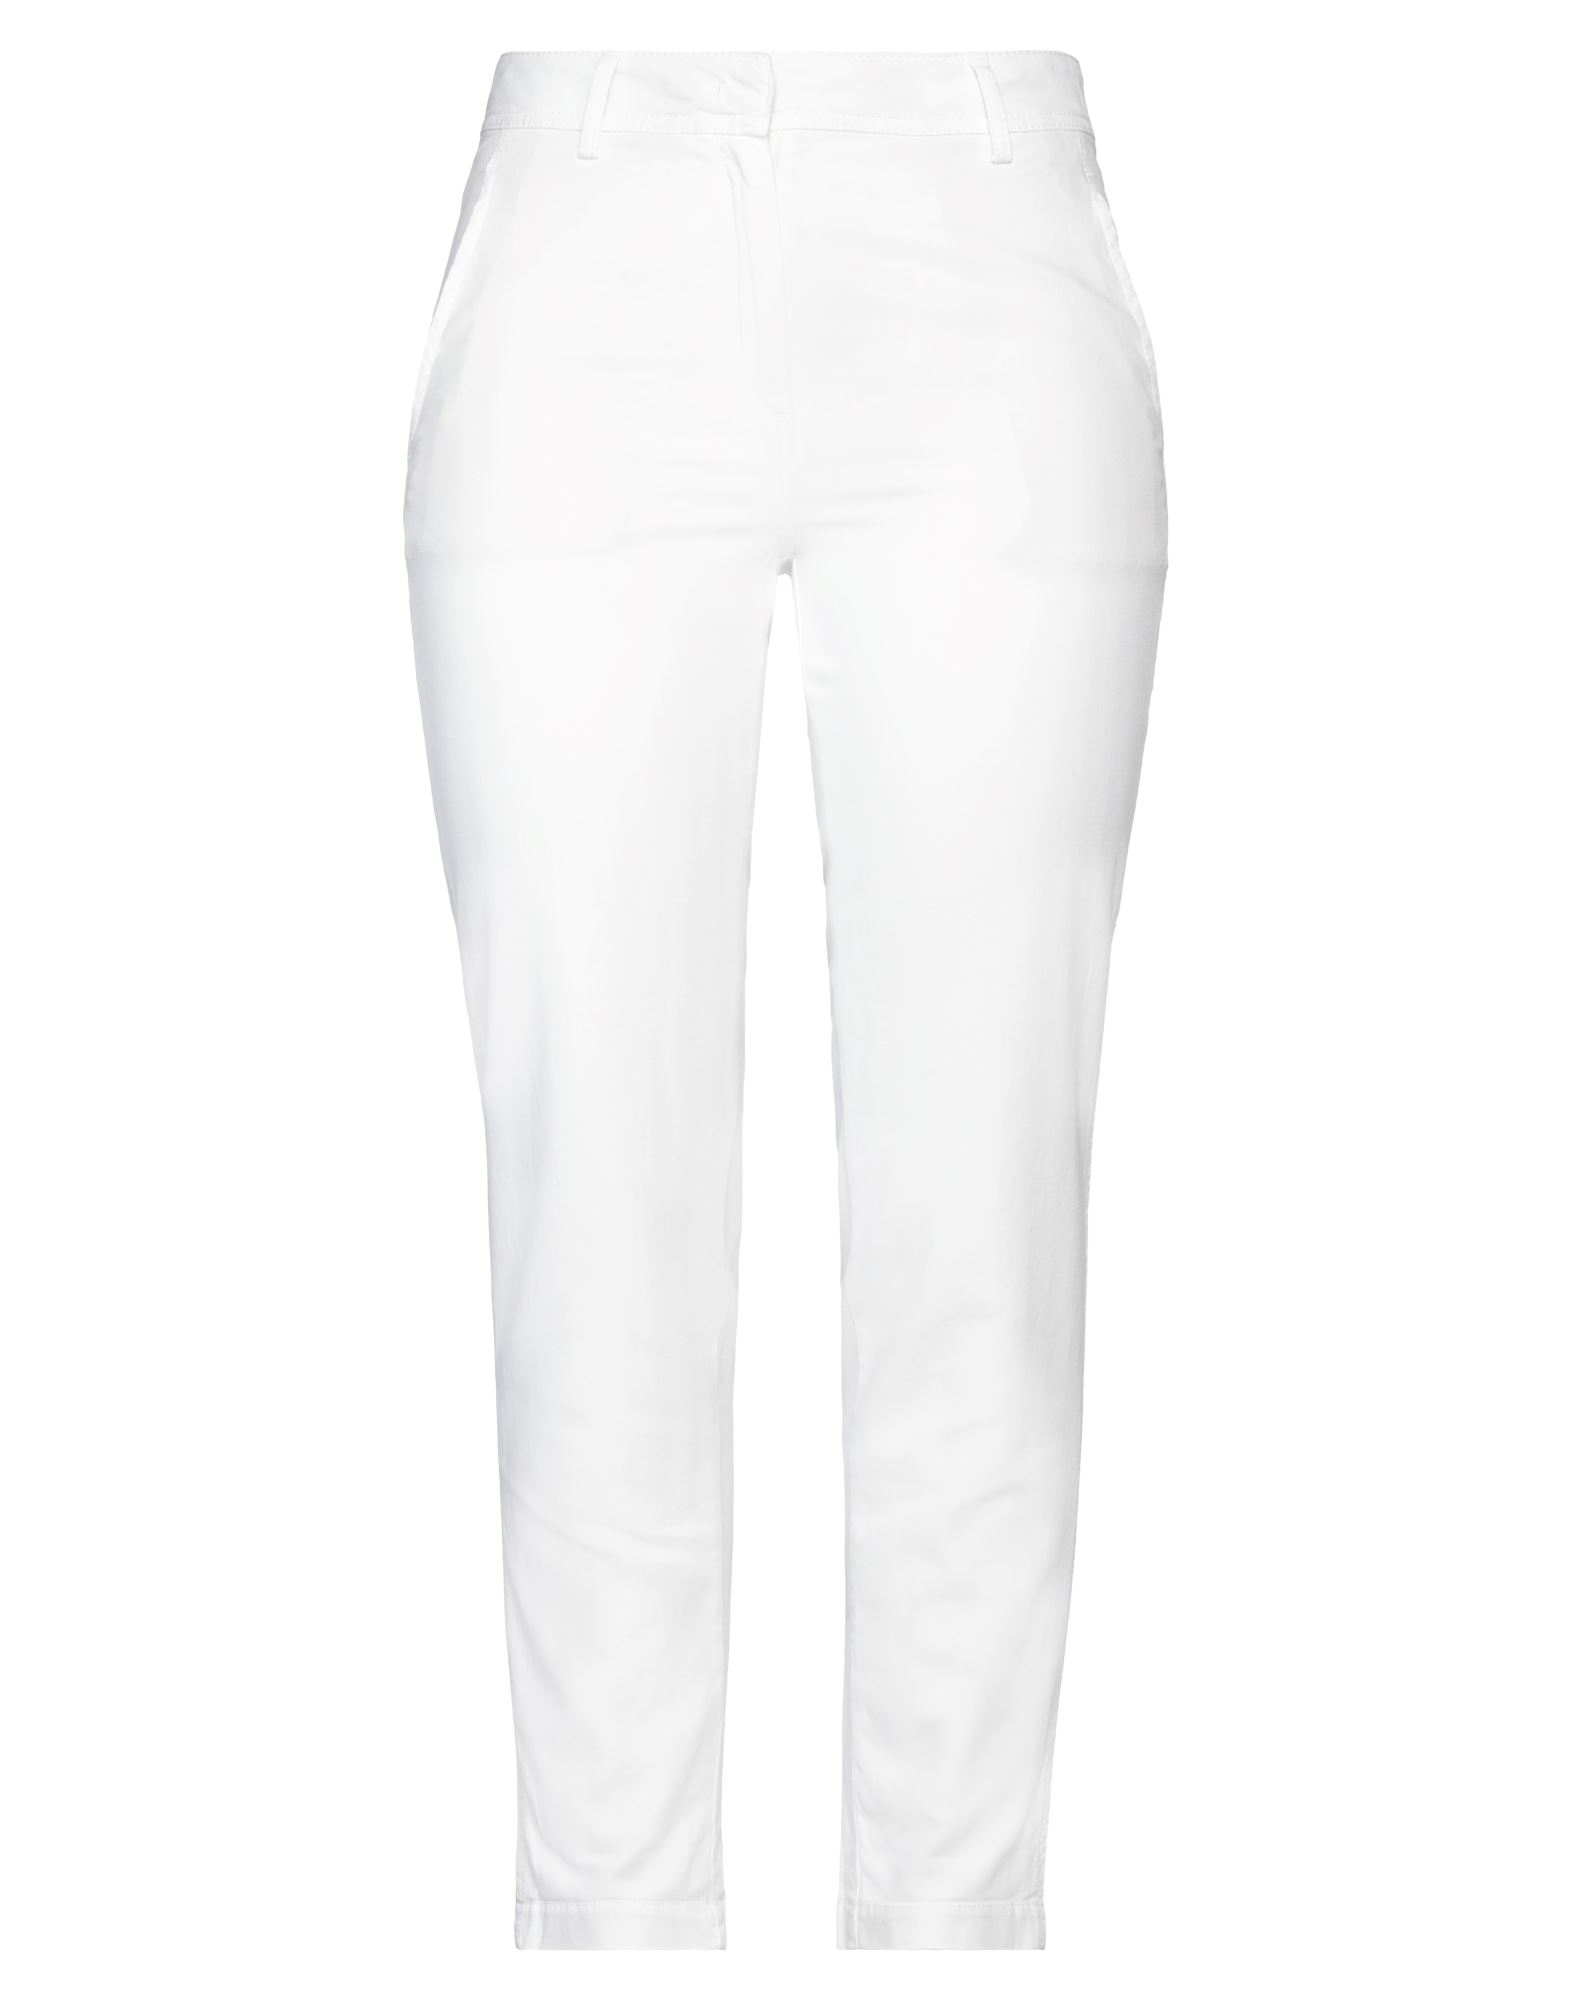 Iris Von Arnim Pants In White